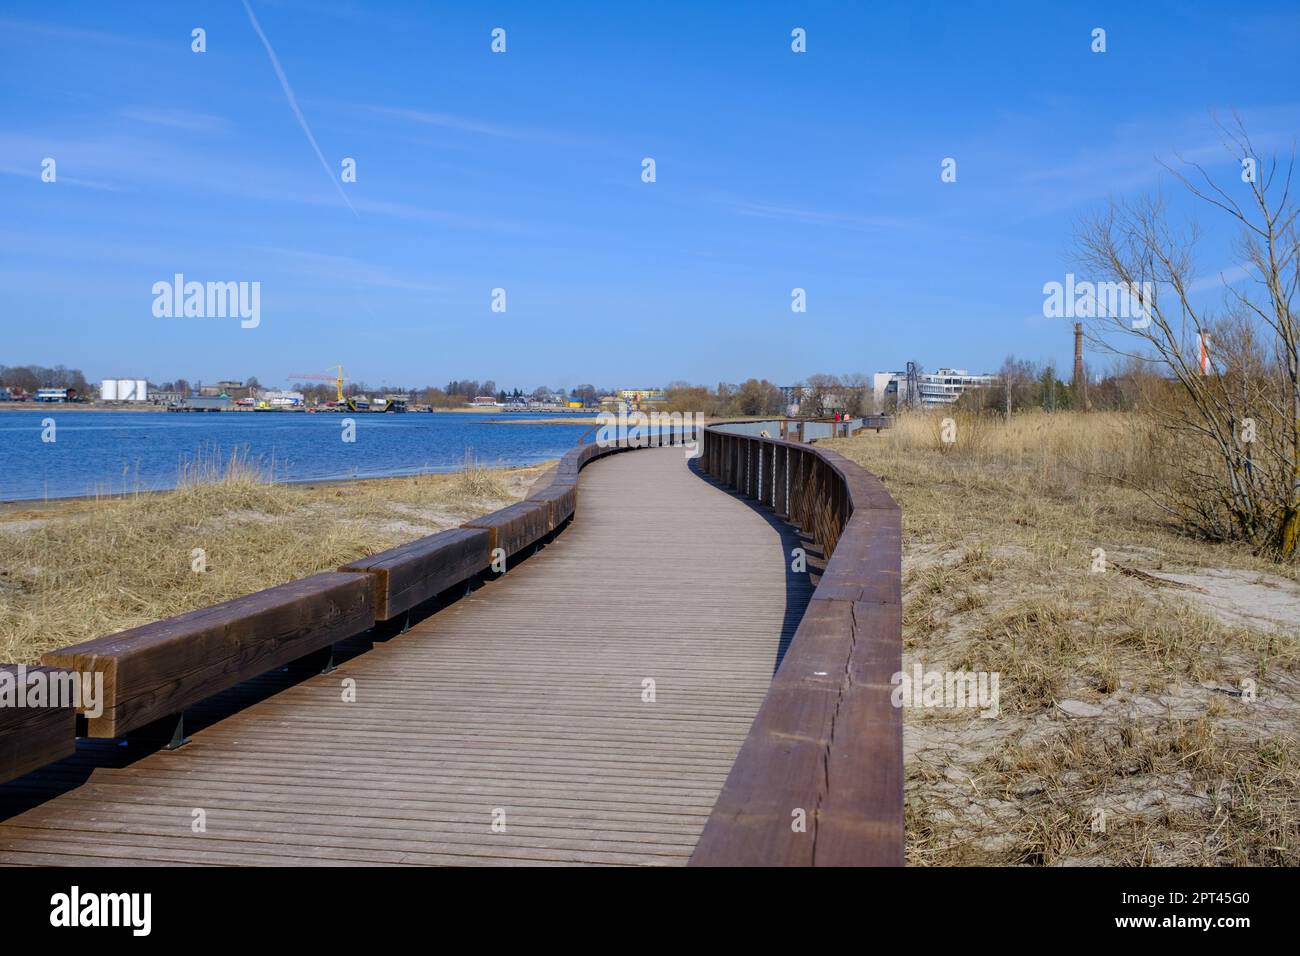 Parnu passeggiata in legno lungo il fiume. Nuove infrastrutture moderne per il tempo libero Foto Stock